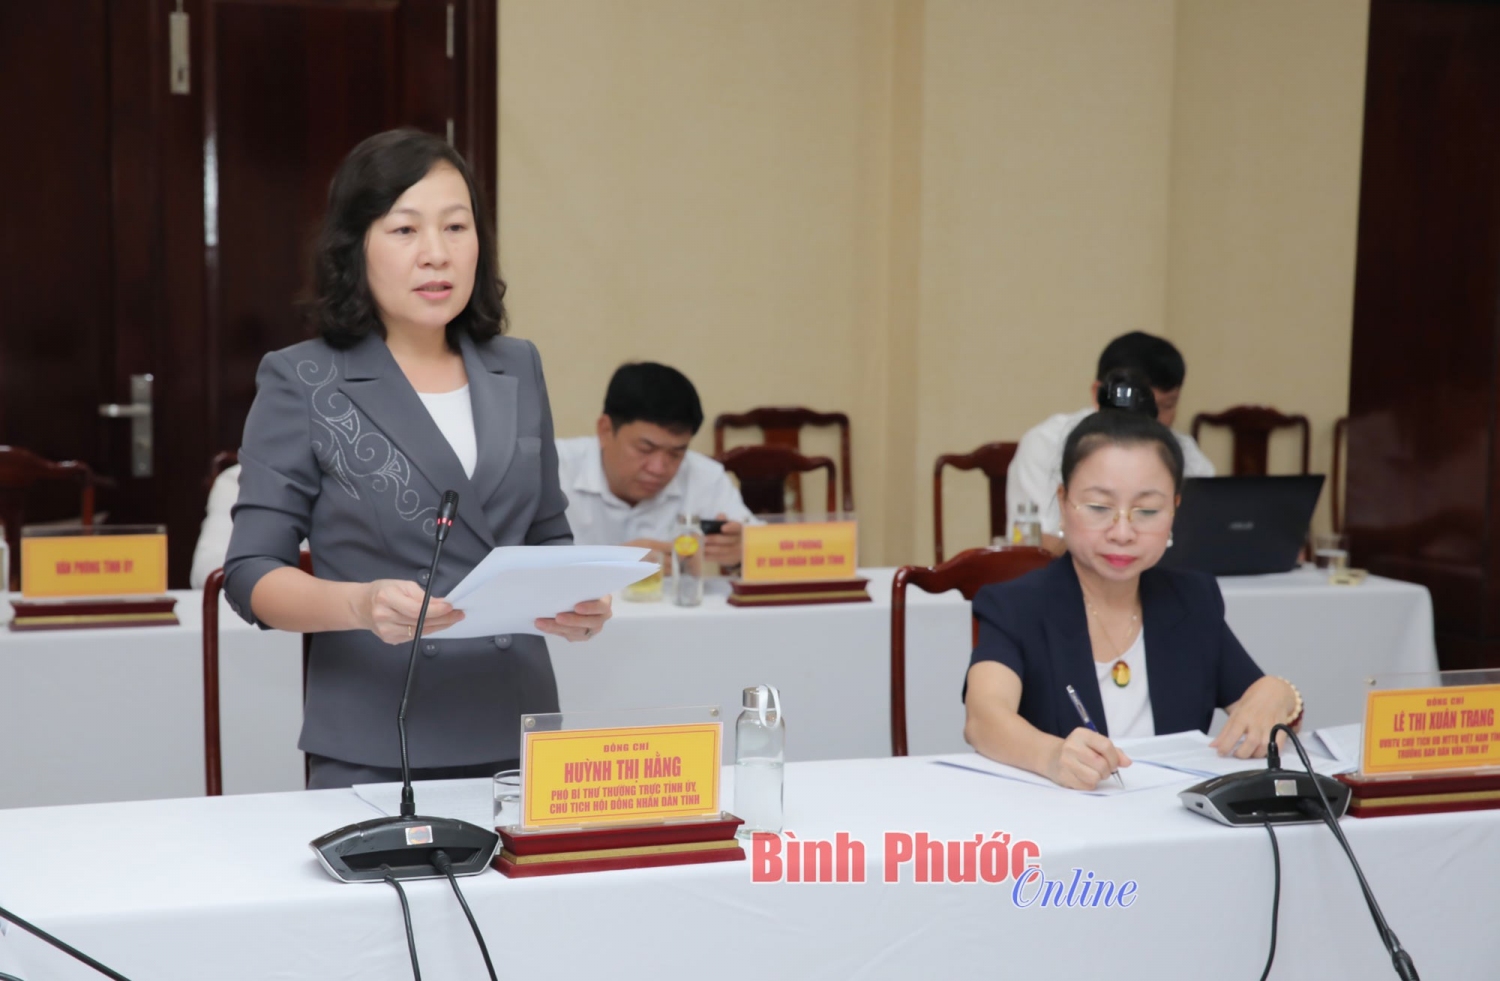 Đồng chí Huỳnh Thị Hằng, Phó Bí thư Thường trực Tỉnh ủy, Chủ tịch HĐND tỉnh triển khai công tác chuẩn bị tết cho người dân trong tỉnh